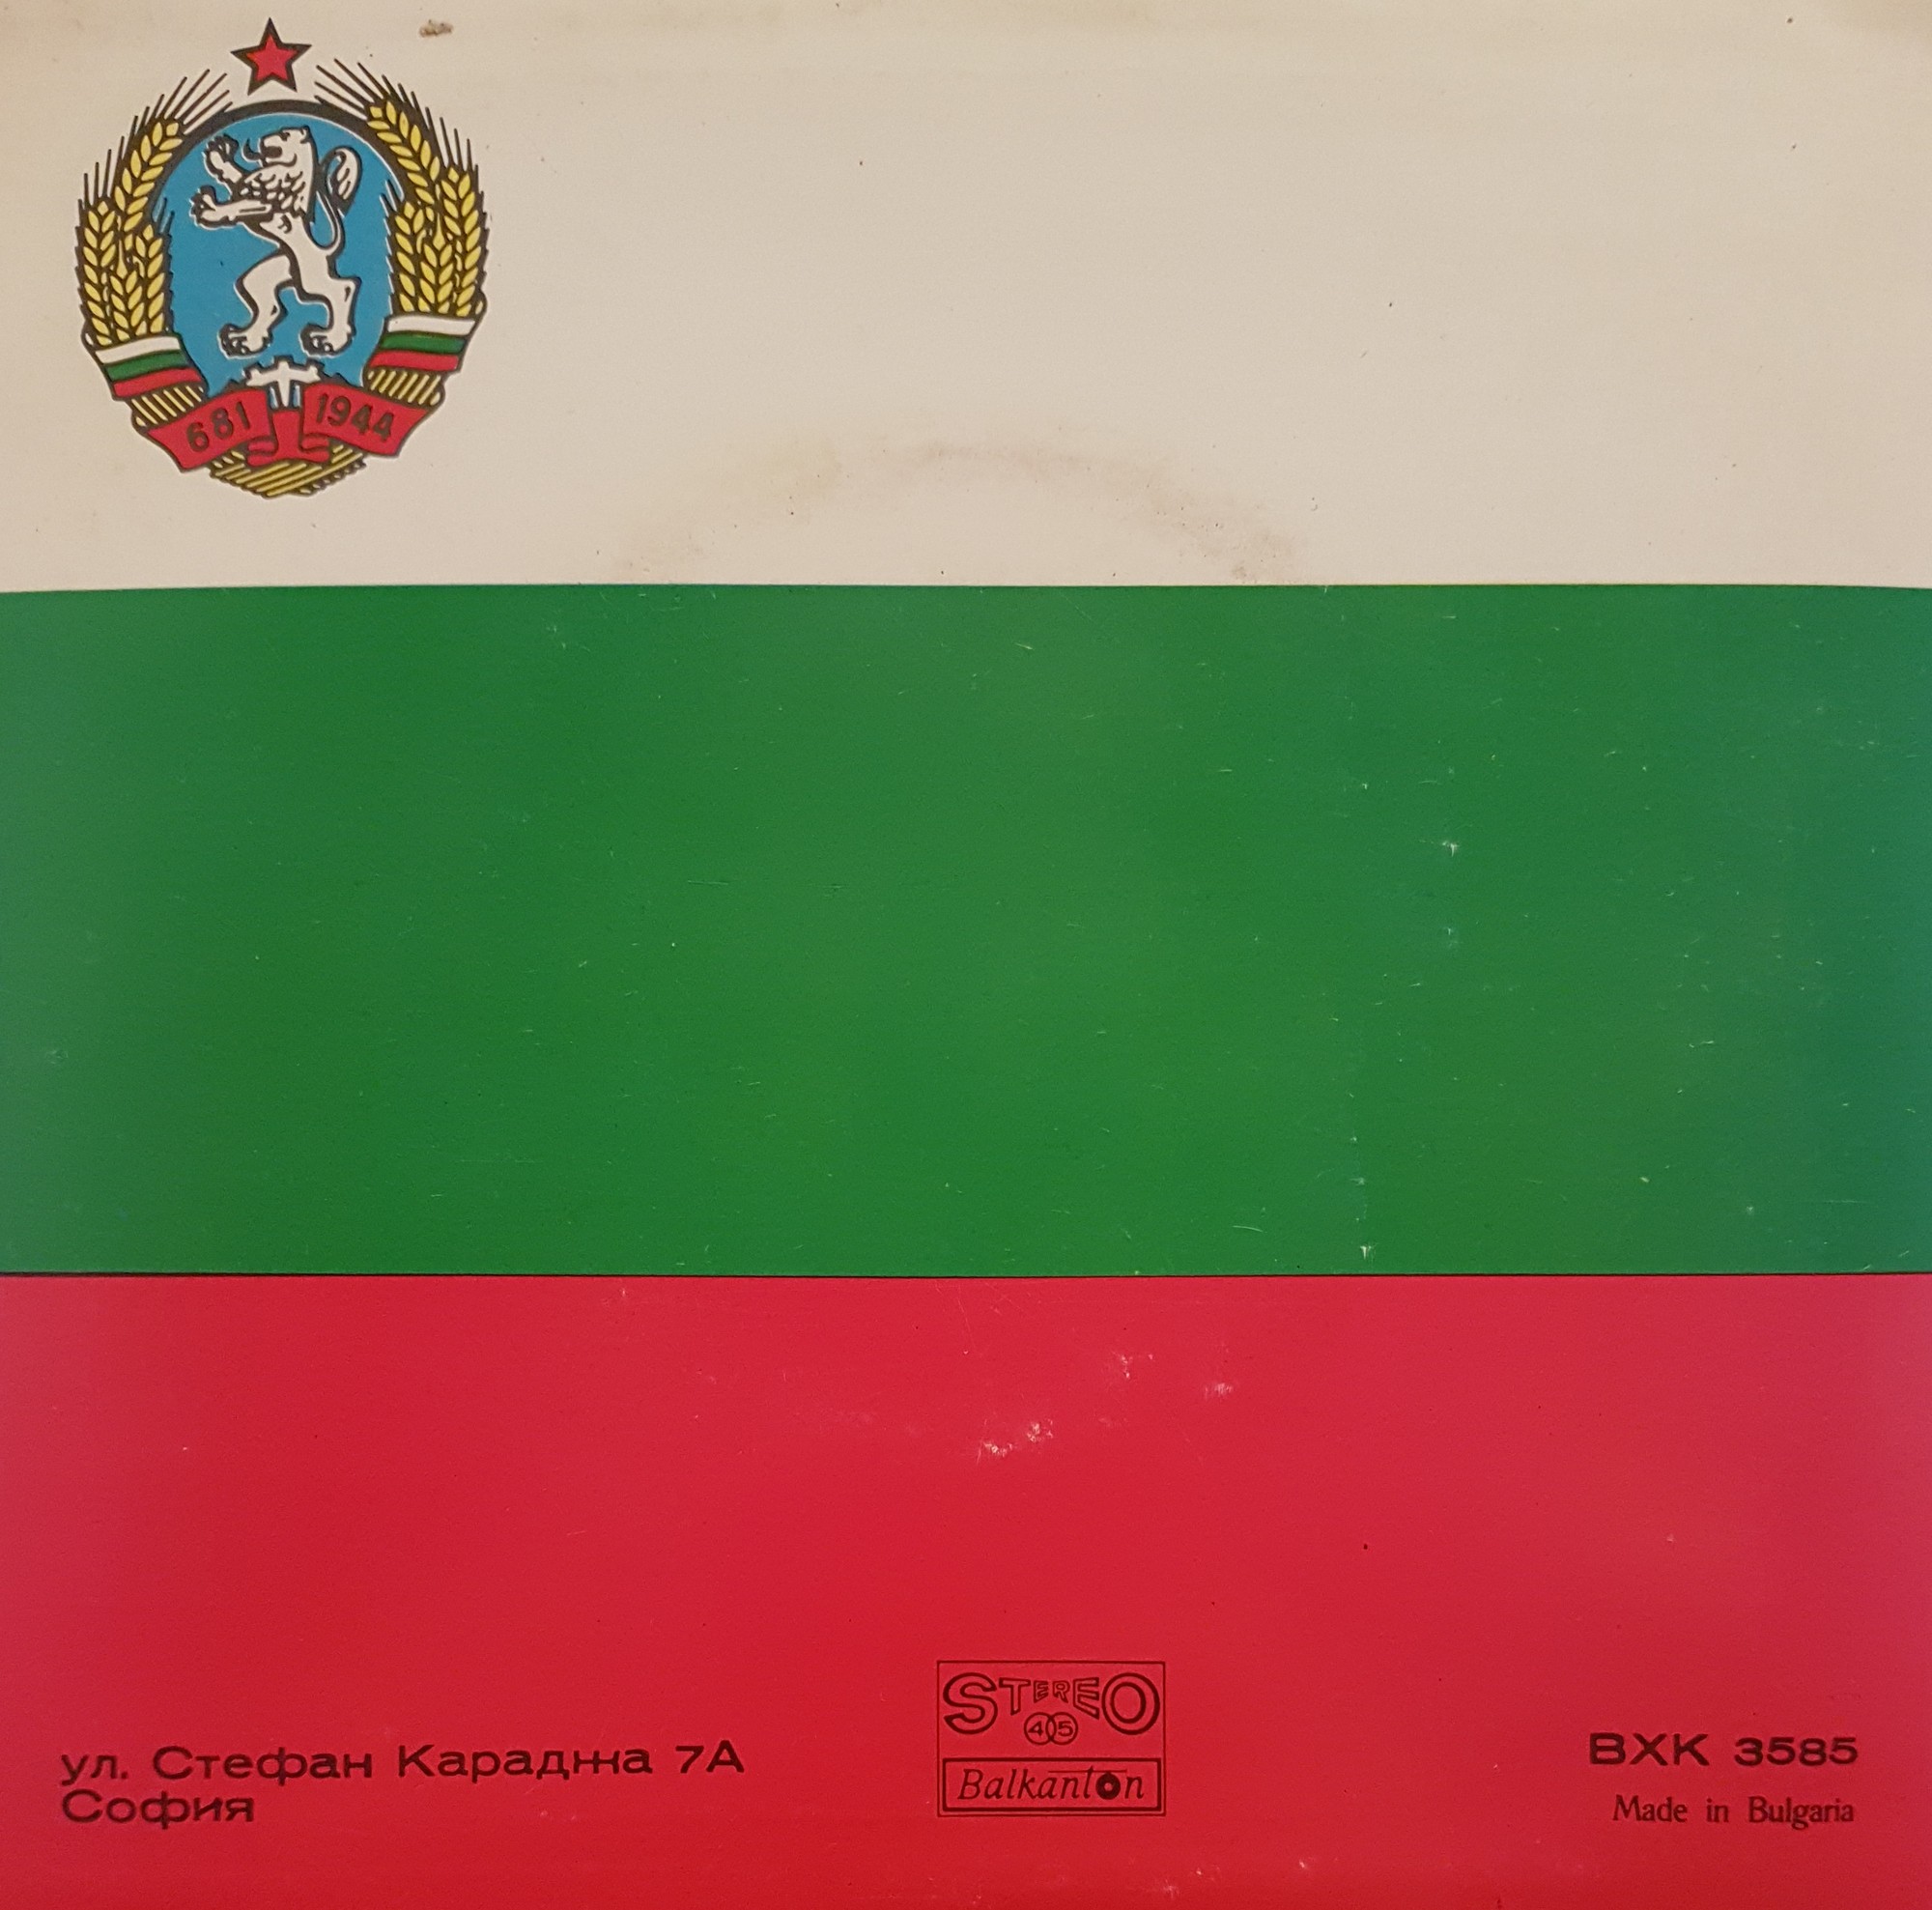 Славянски комитет в България